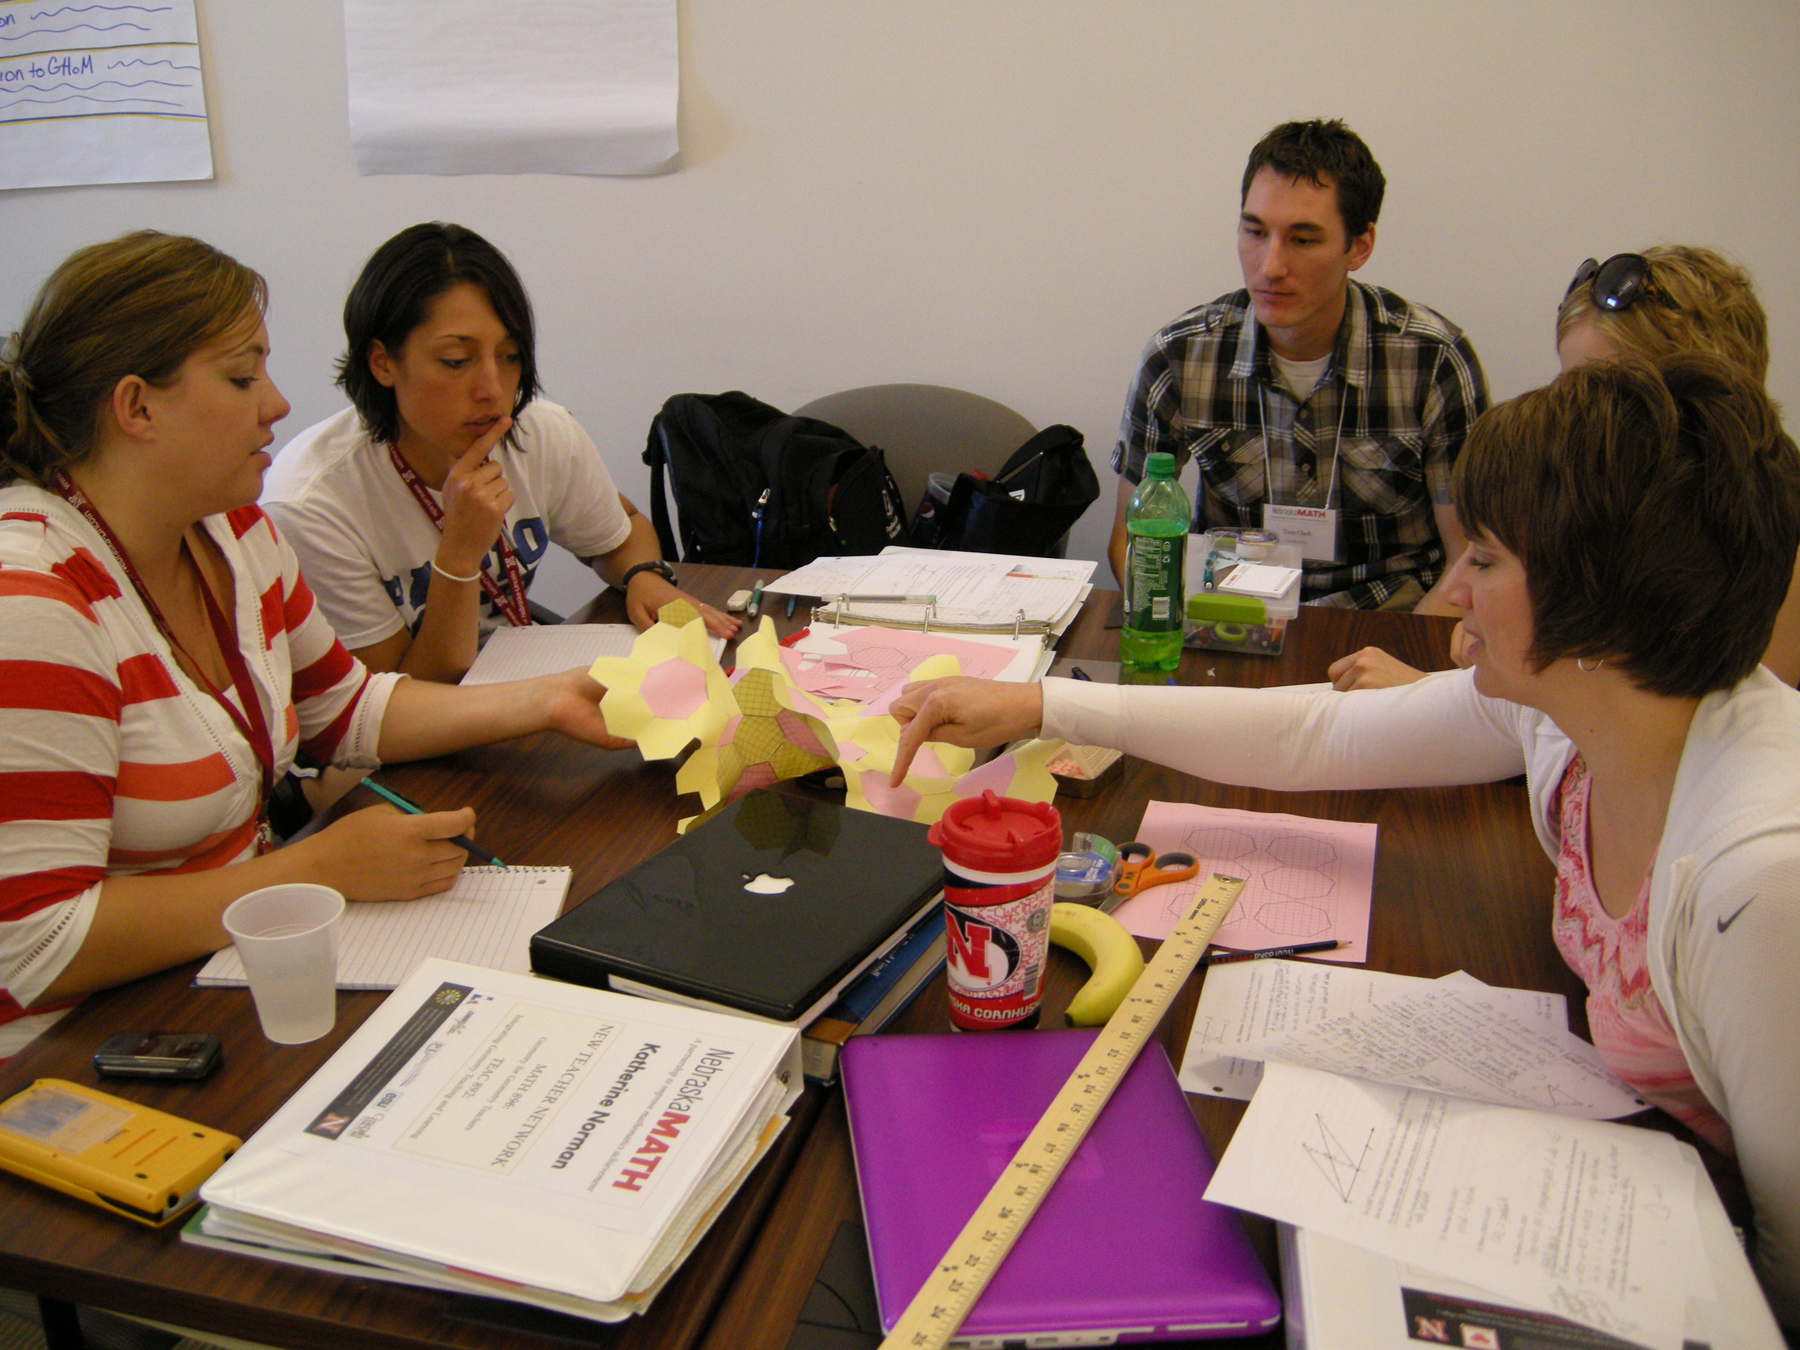 Tom Clark (back, right) helps teachers during New Teacher Network in 2011.